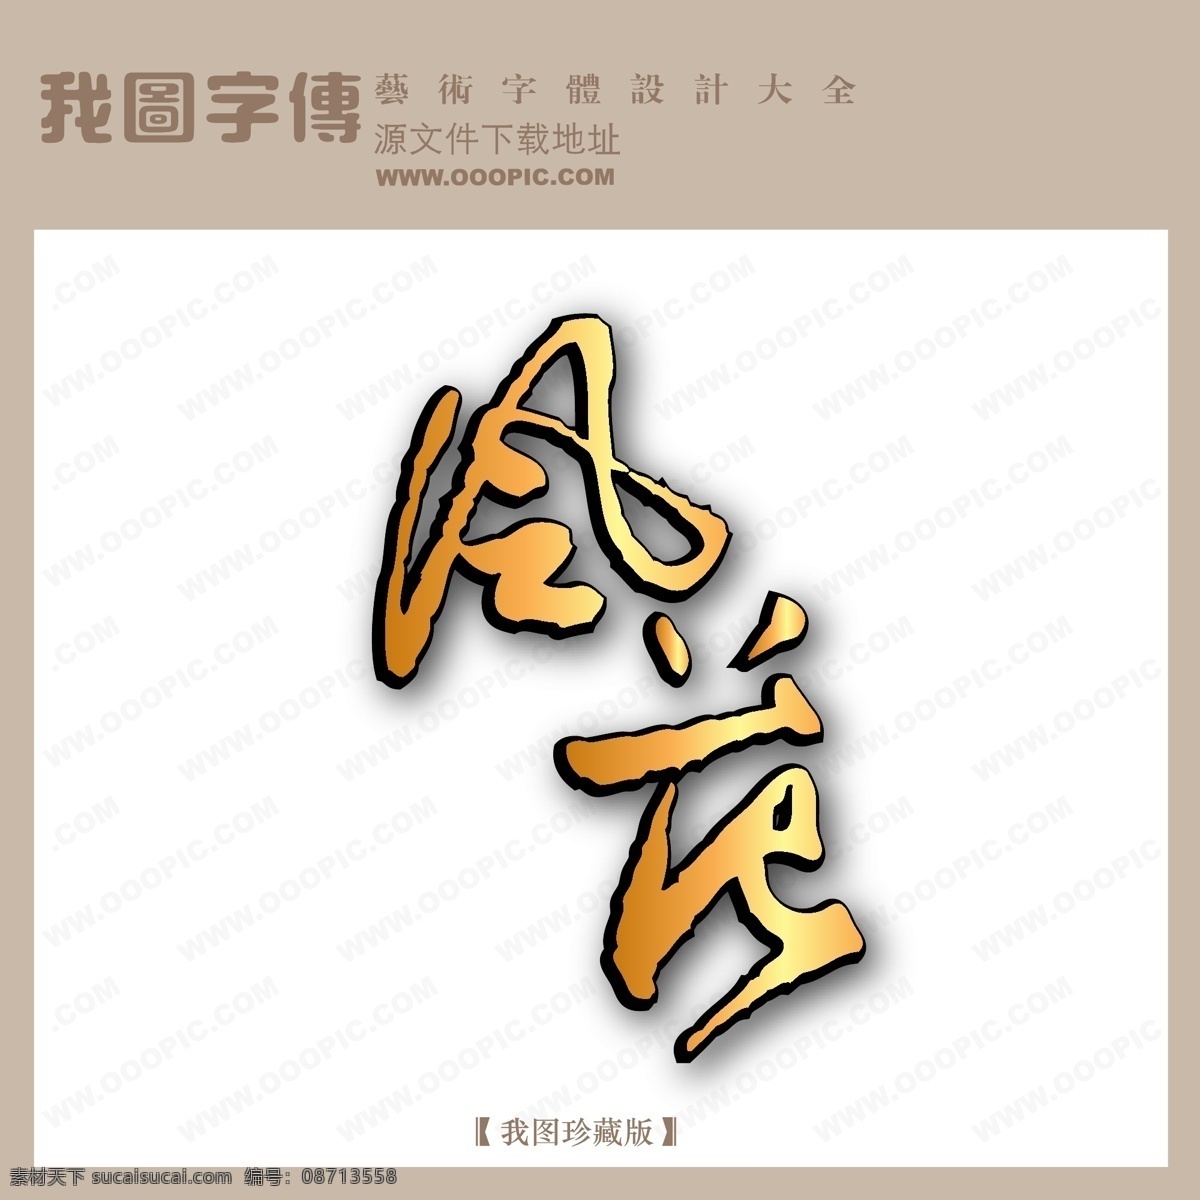 风 苑 字体 设计艺术 字 中文 现代艺术 logo 艺术 创意艺术字 风苑 矢量图